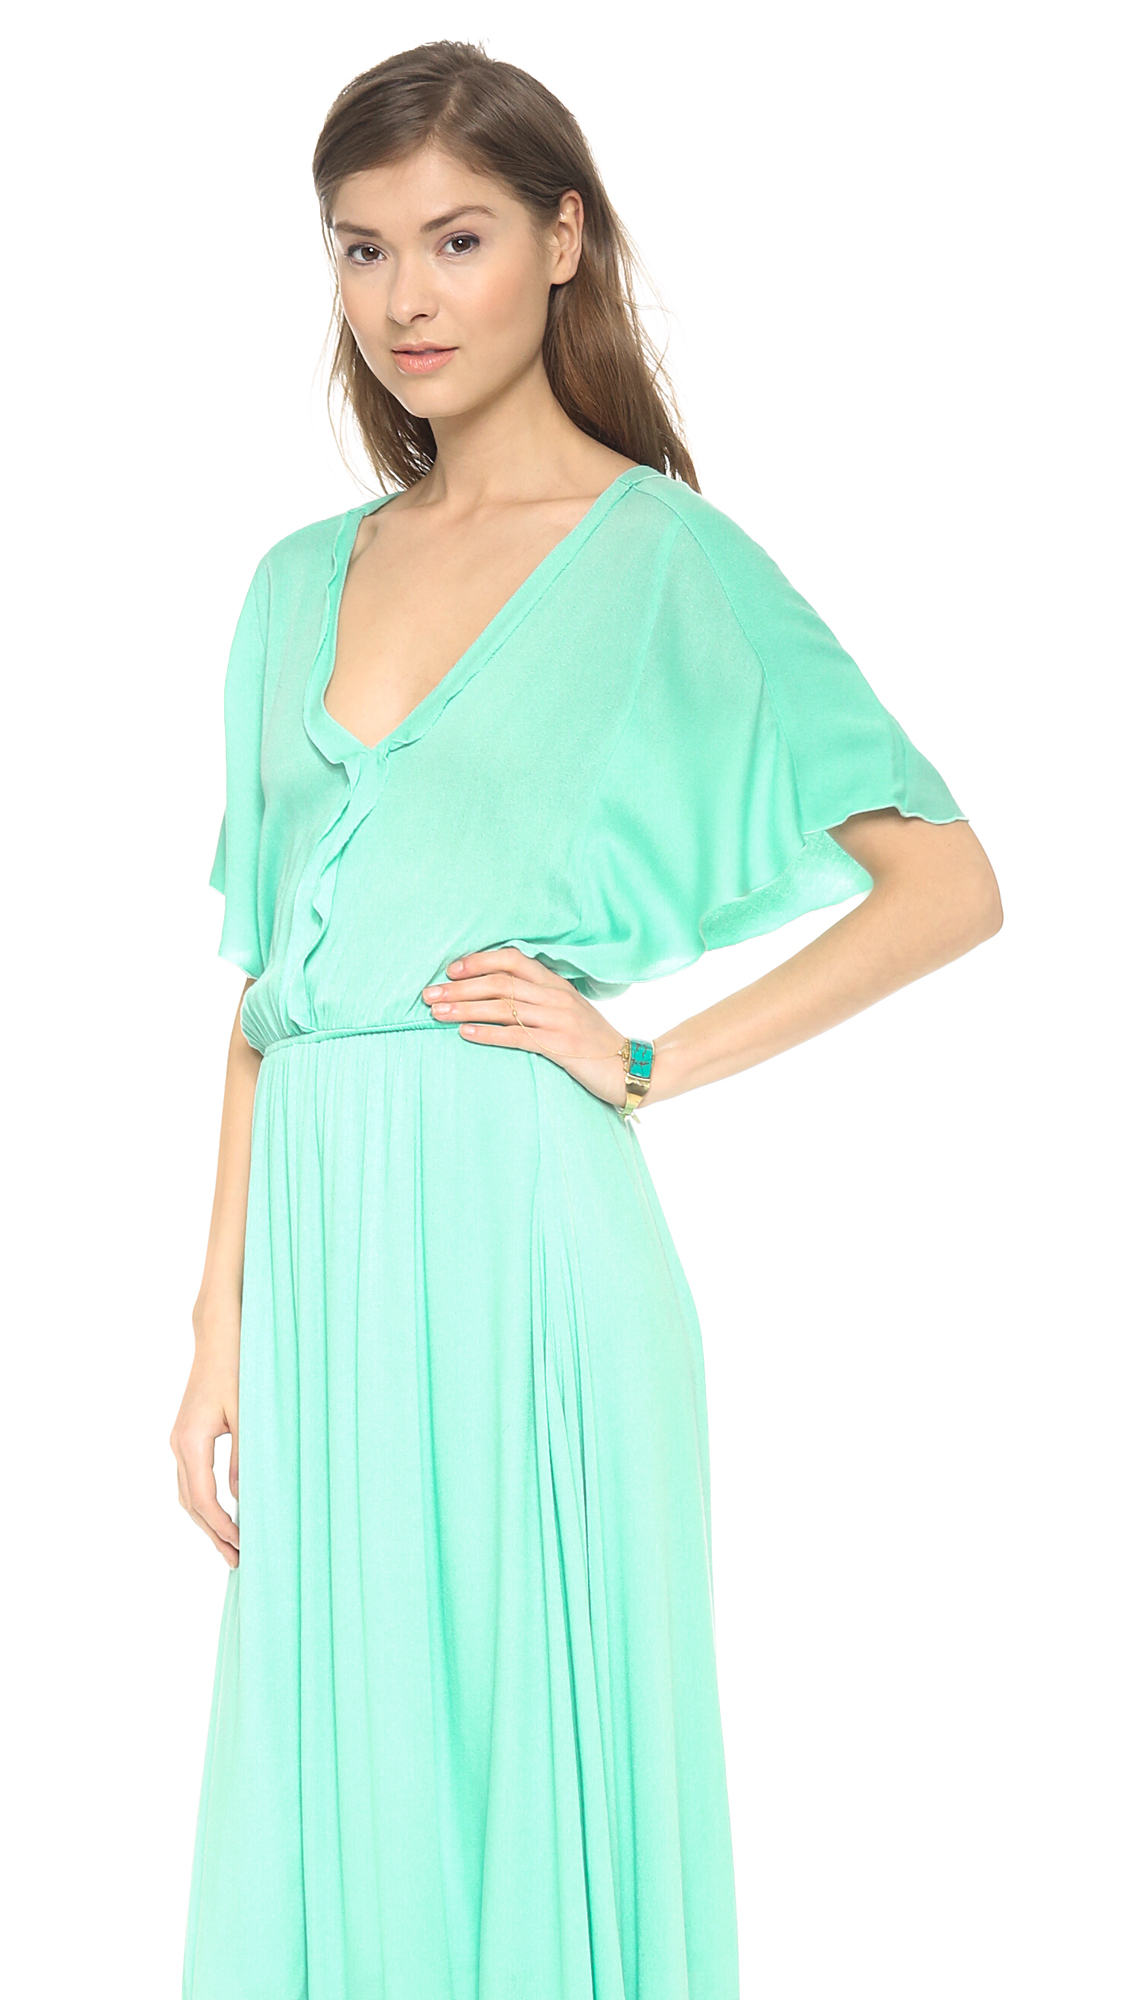 Lyst - Ella moss Stella Maxi Dress in Green